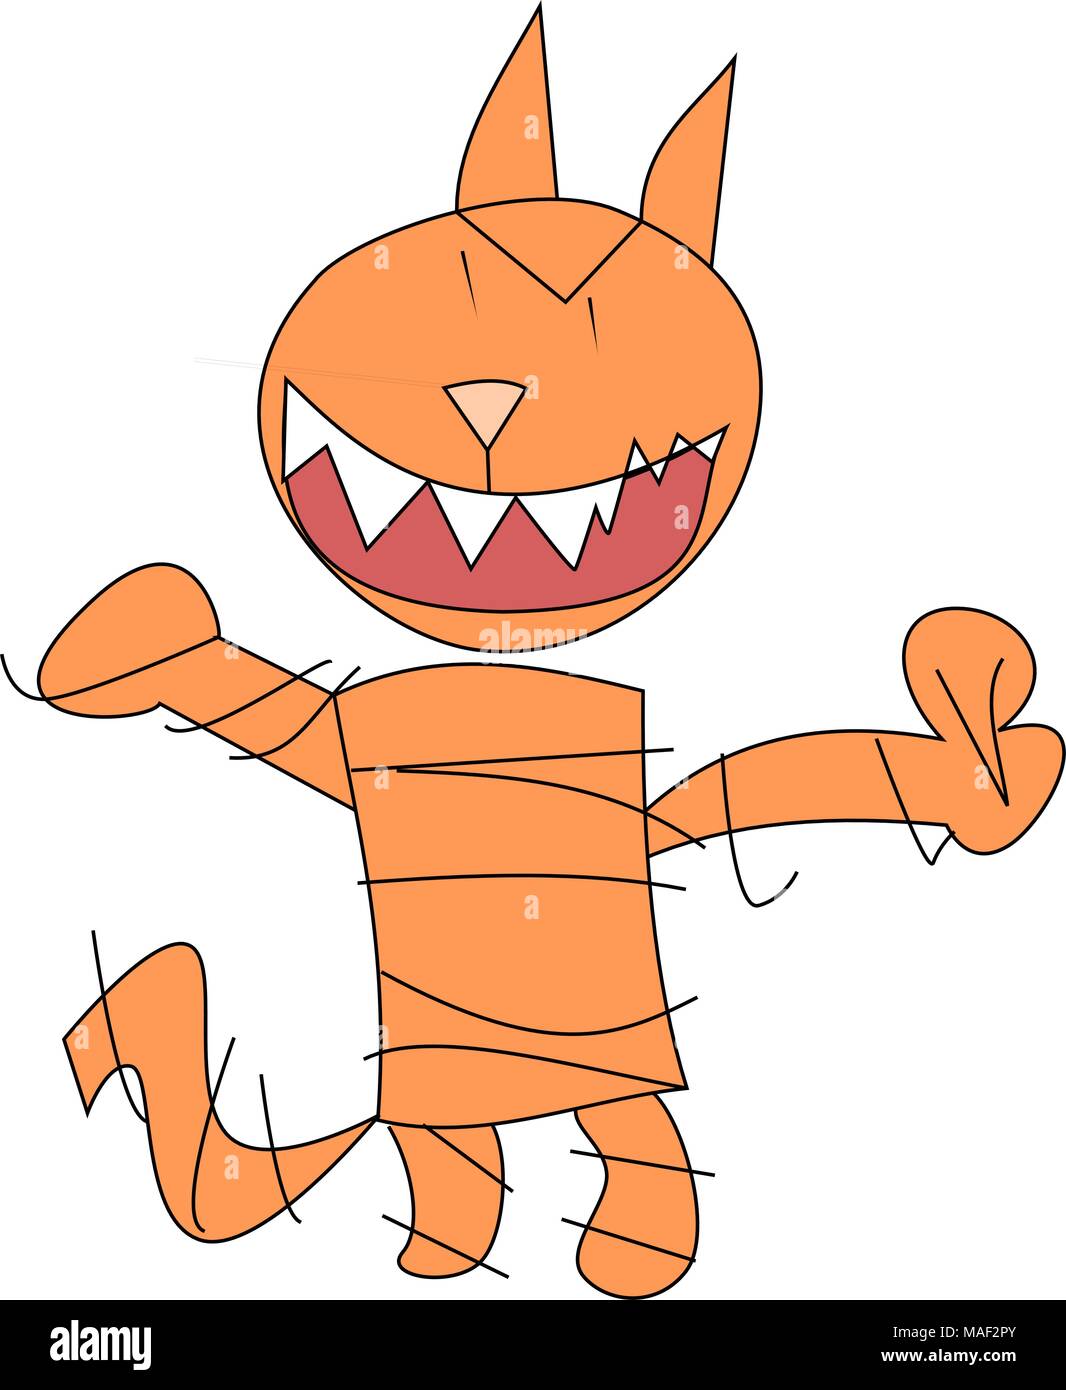 Gato loco malvado dibujado al Estilo de un Niño pequeño. Sonrisa diabólica Farbe naranja aunque Personalisierbaren. Stock Vektor